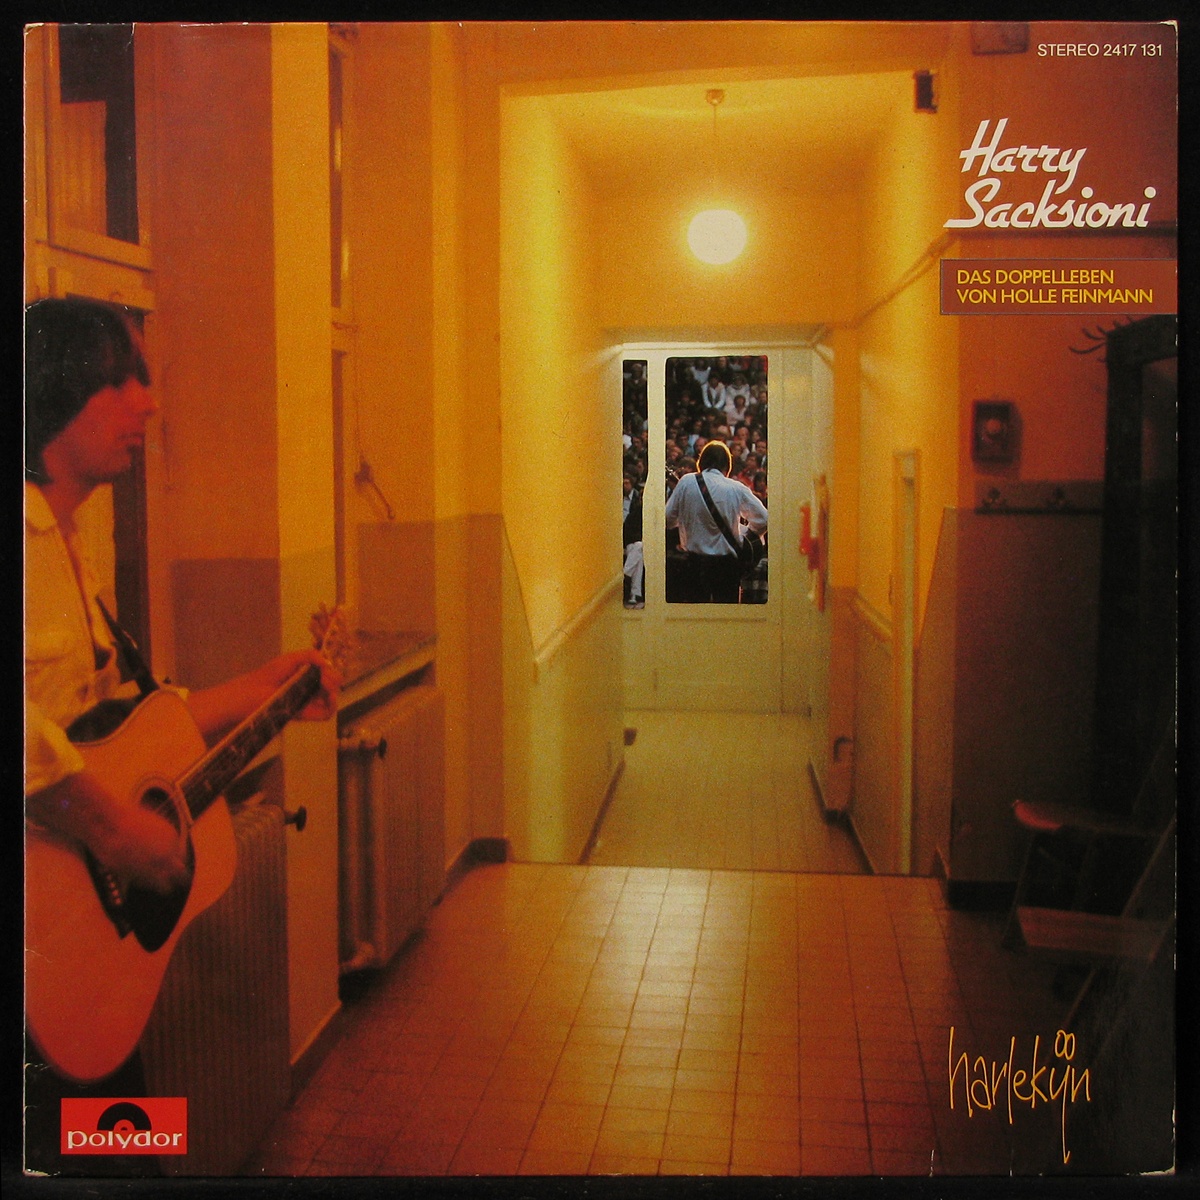 LP Harry Sacksioni — Het Dubbelleven Van Holle Vijnman фото